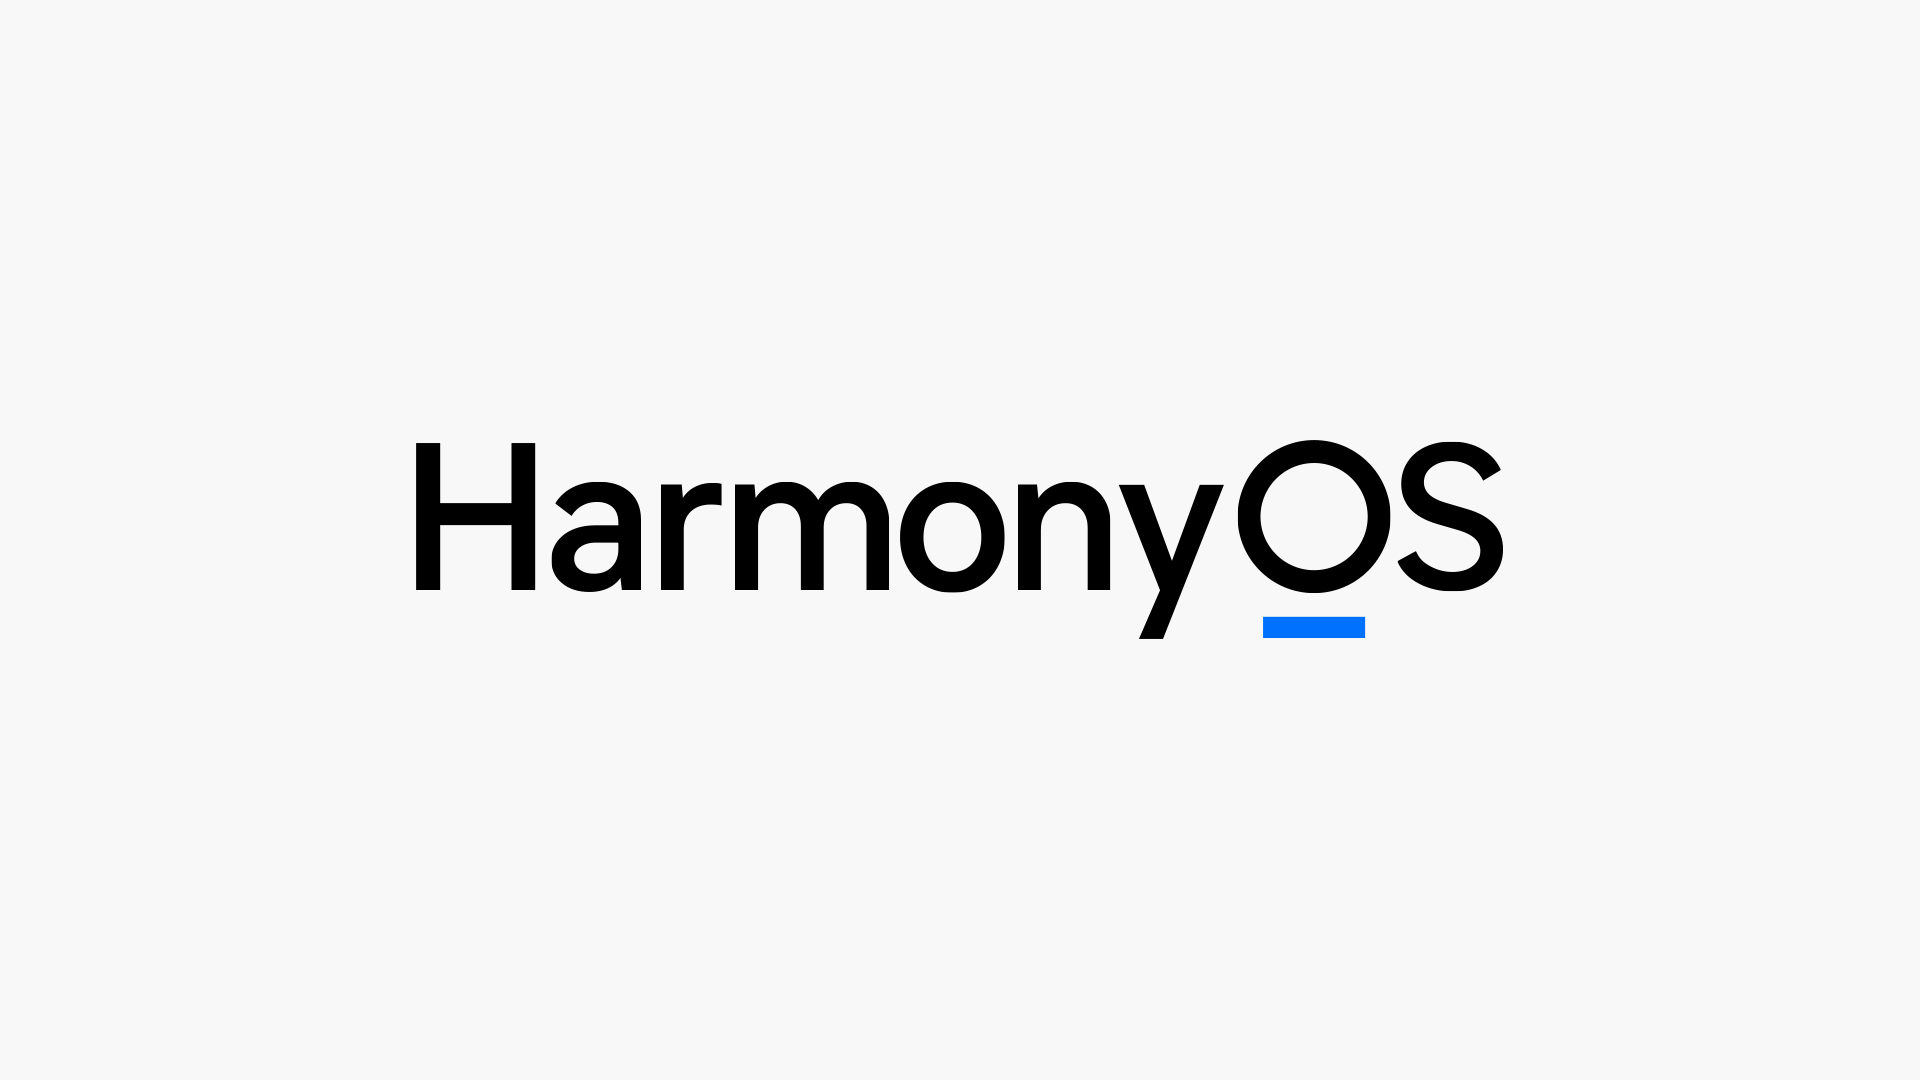 华为鸿蒙 harmonyos 新logo发布,解读logo中的「」有何含义?